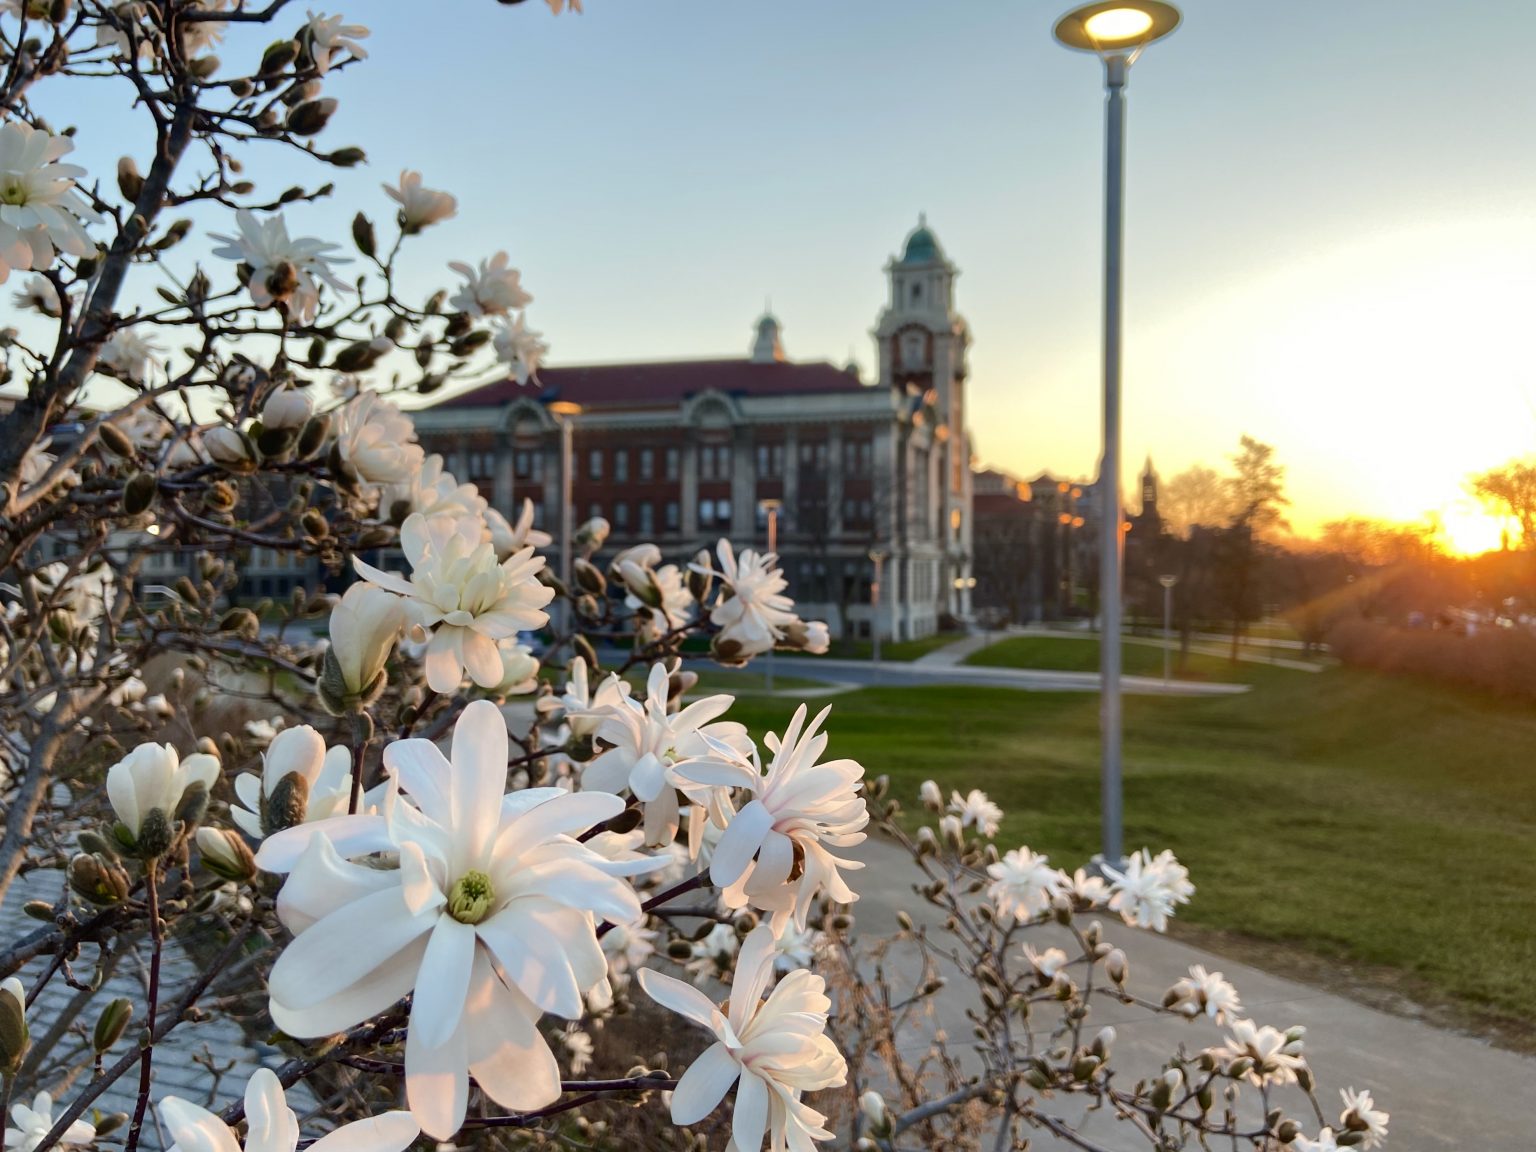 Syracuse Views Spring 2021 – Syracuse University News